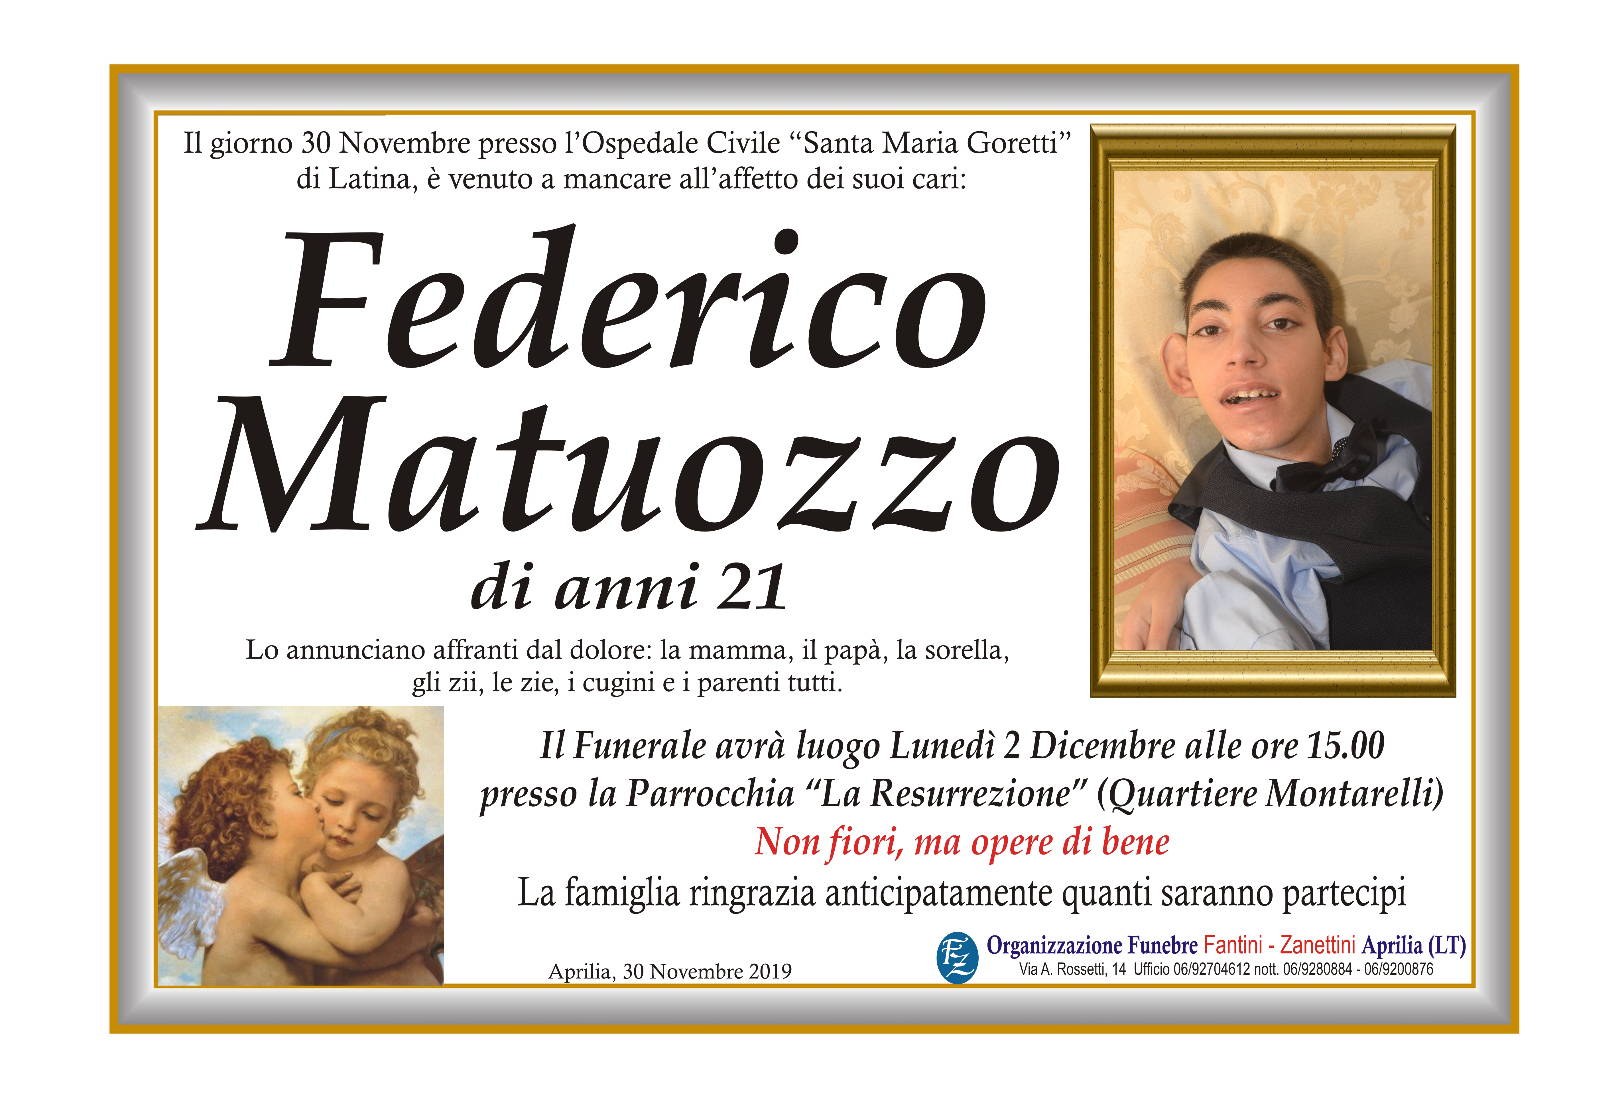 Federico Matuozzo